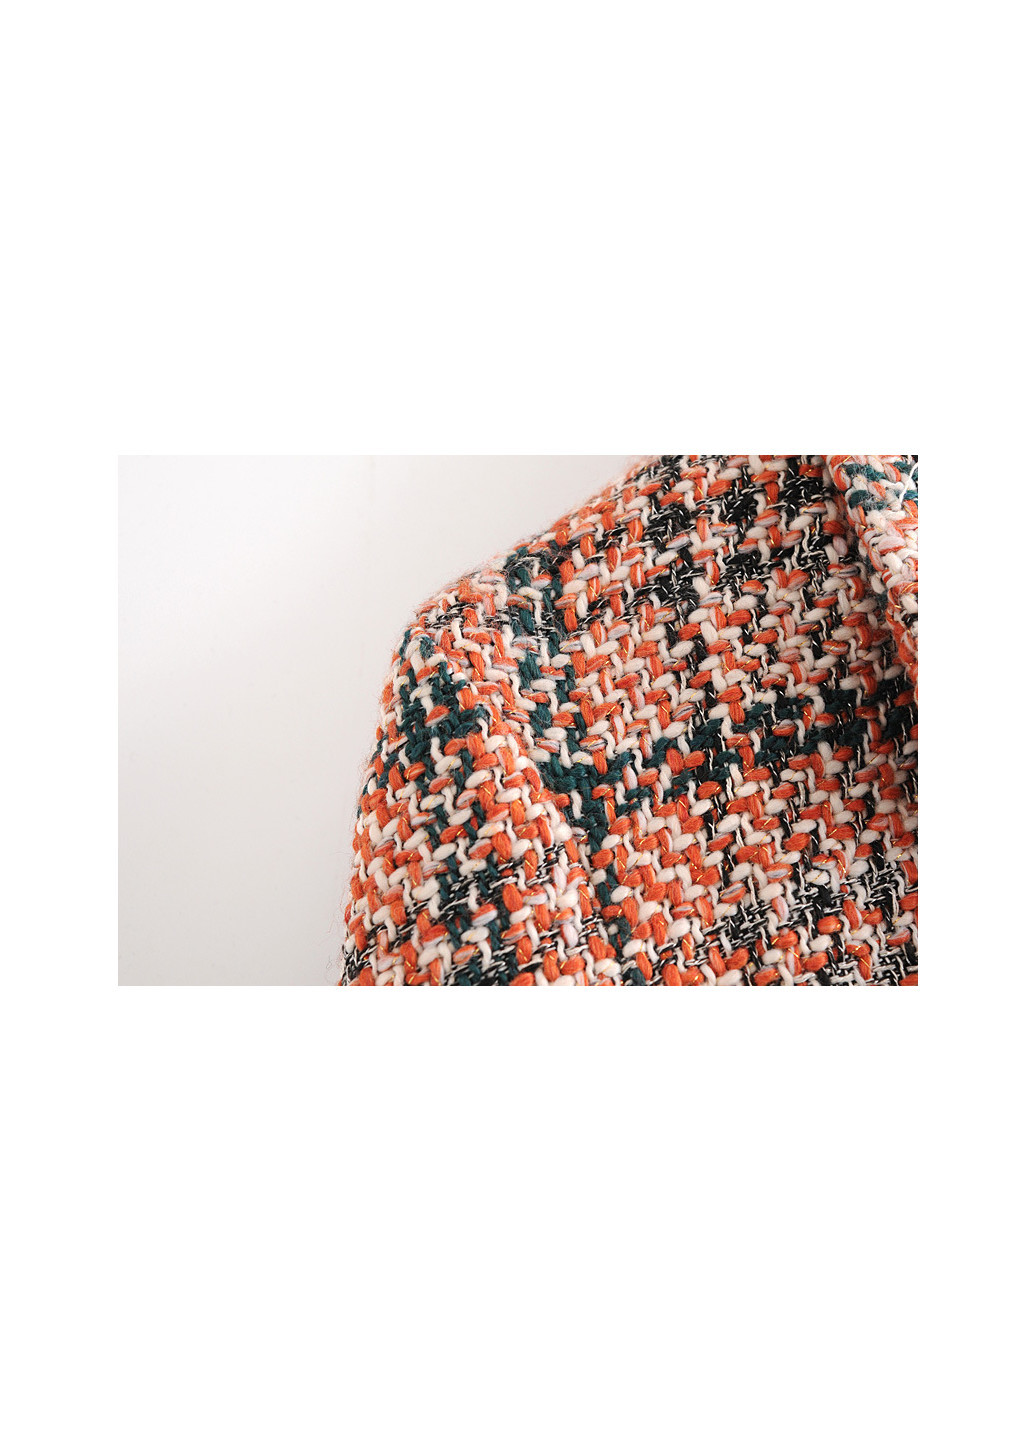 Оранжевый женский блейзер женский из твидовой ткани trendy Berni Fashion в клеточку - демисезонный